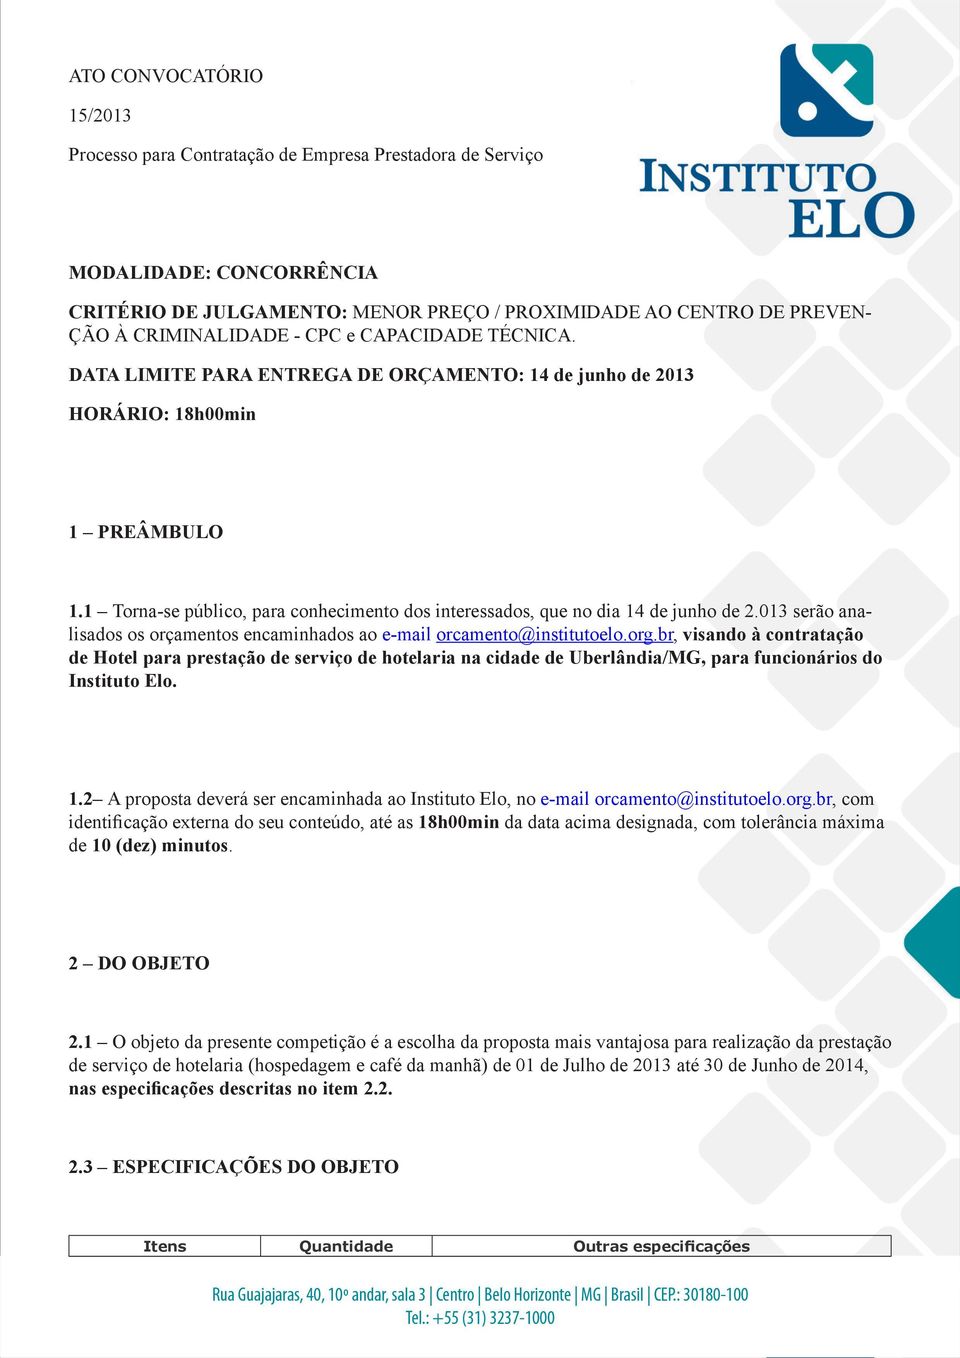 1 Torna-se público, para conhecimento dos interessados, que no dia 14 de junho de 2.013 serão analisados os orçamentos encaminhados ao e-mail orcamento@institutoelo.org.